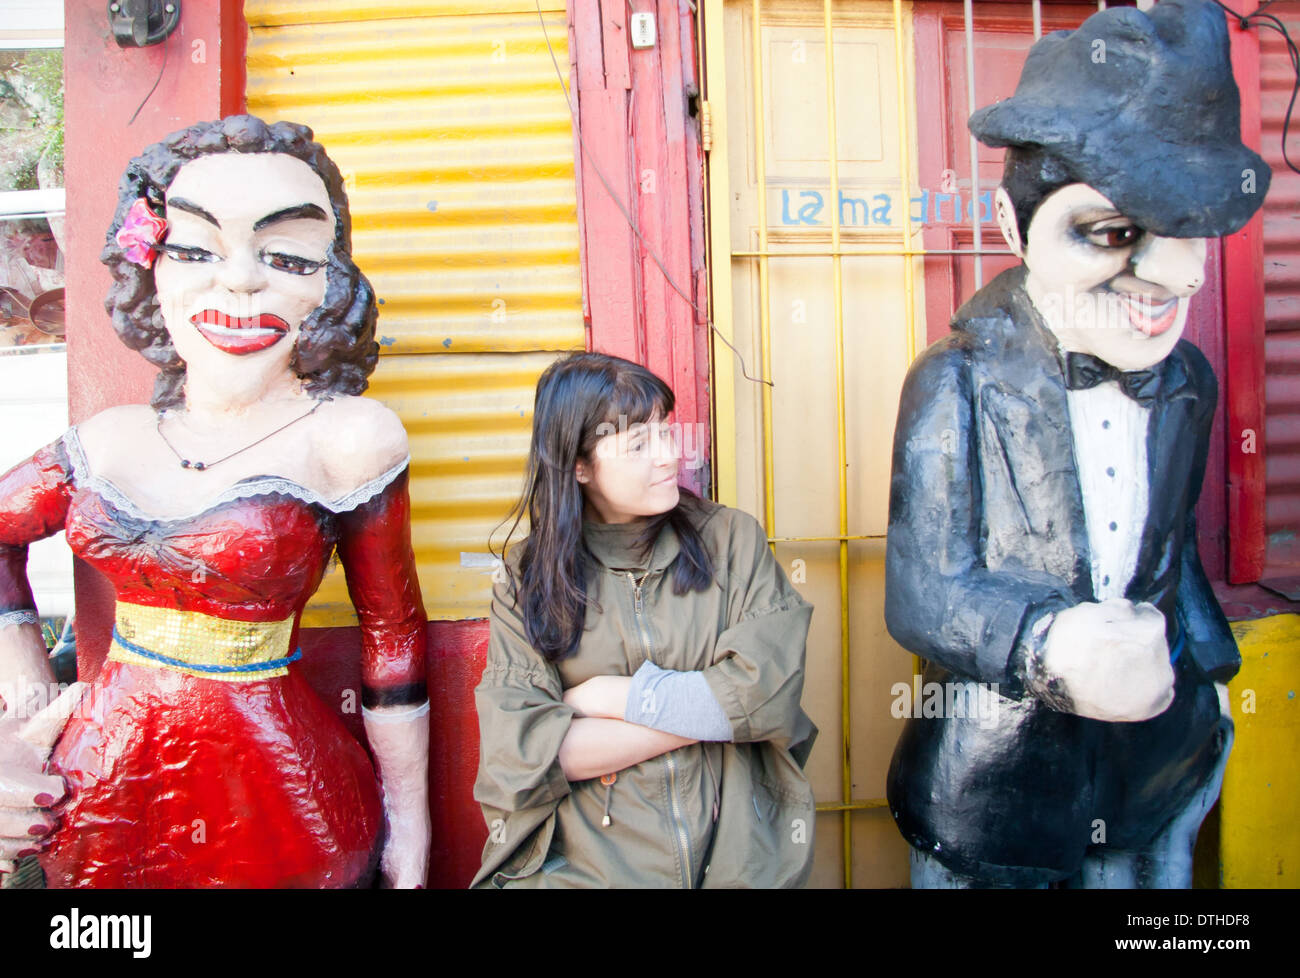 Papier mache dolls, La Boca, Buenos Aires Stock Photo